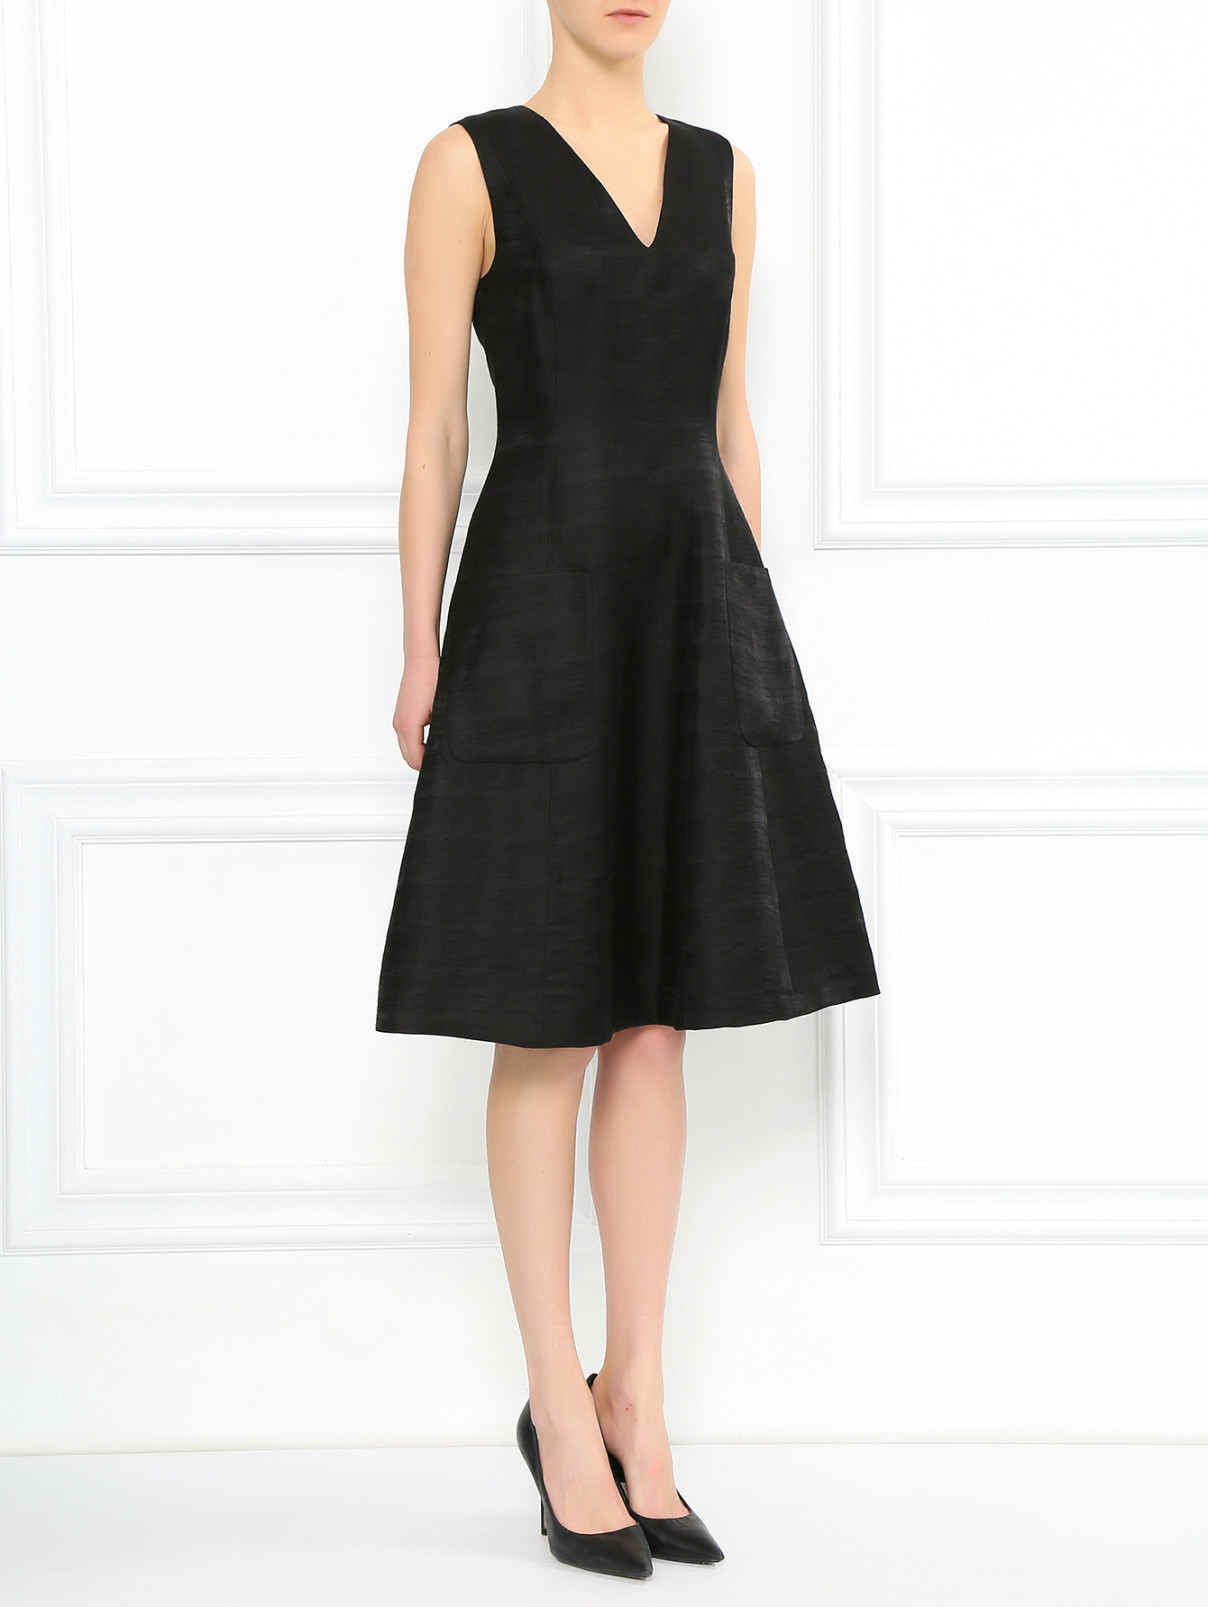 Платье из льна с накладными карманами Paul Smith  –  Модель Общий вид  – Цвет:  Черный